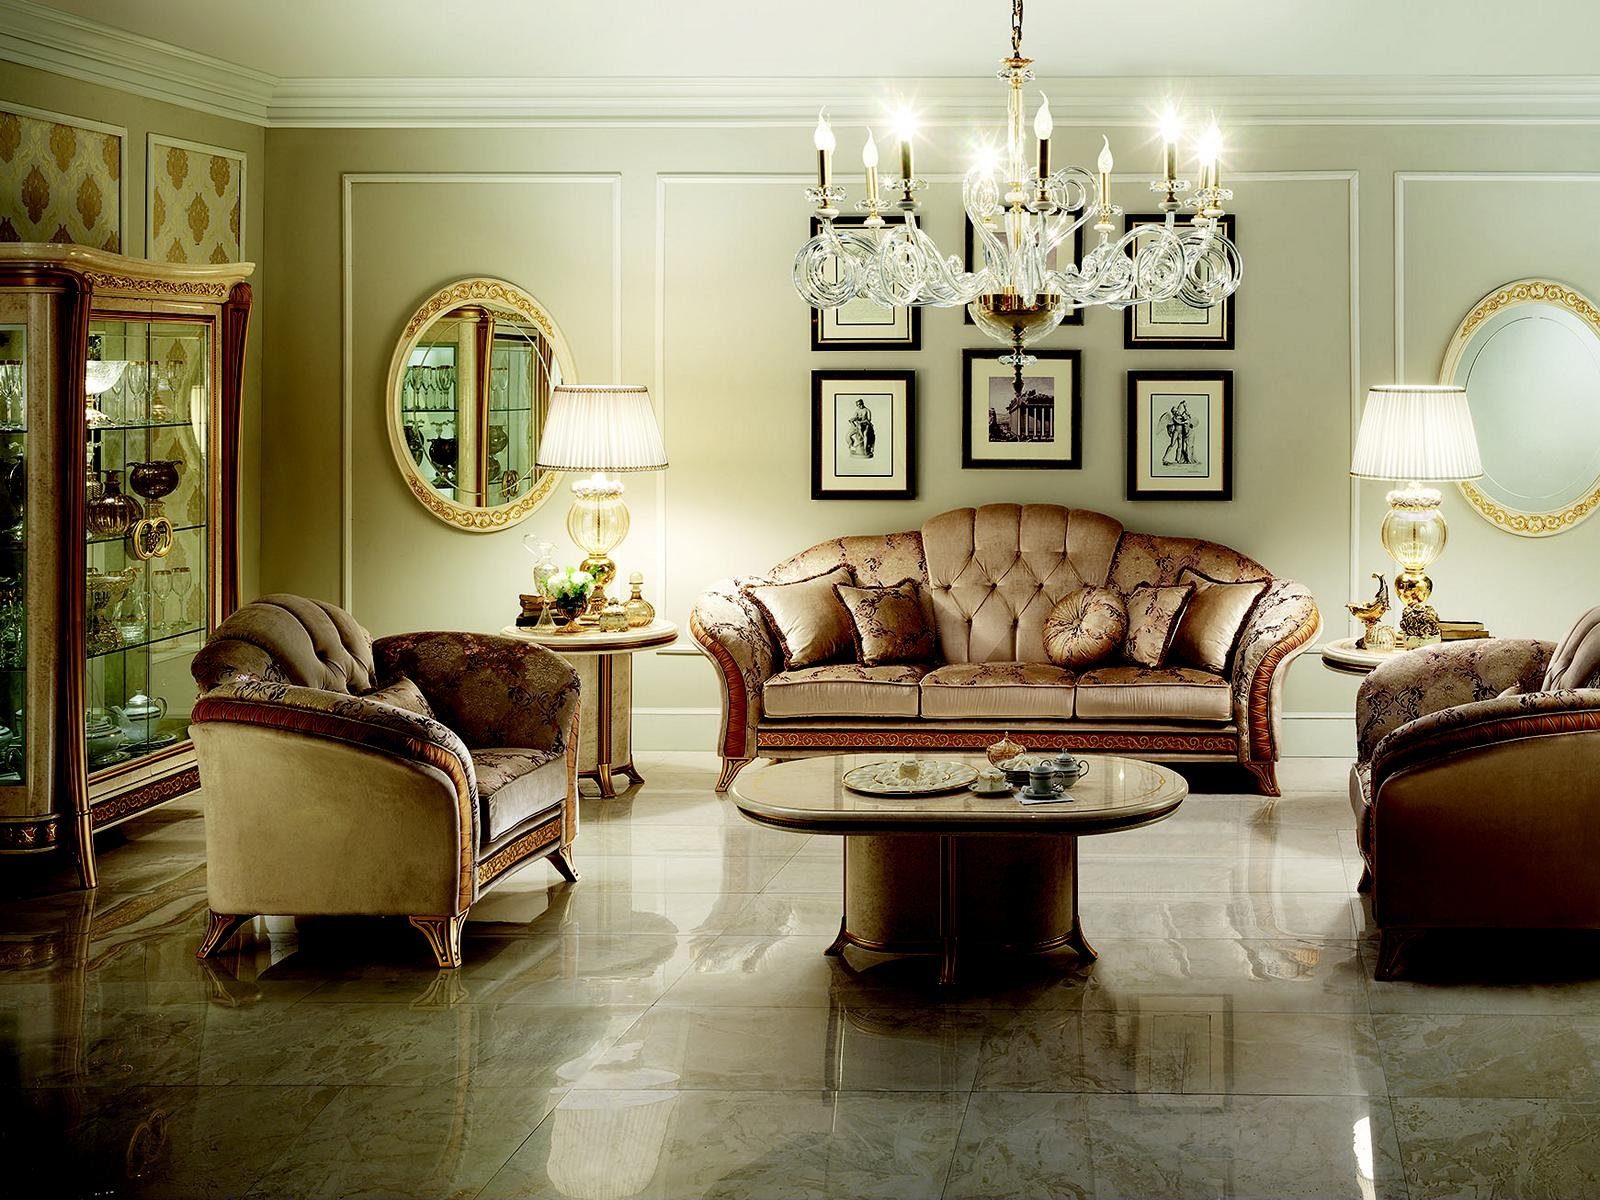 JVmoebel Wohnzimmer-Set, Luxus Klasse 3+1+1 Italienische Möbel Sofagarnitur Couch Sofa Neu arredoclassic™